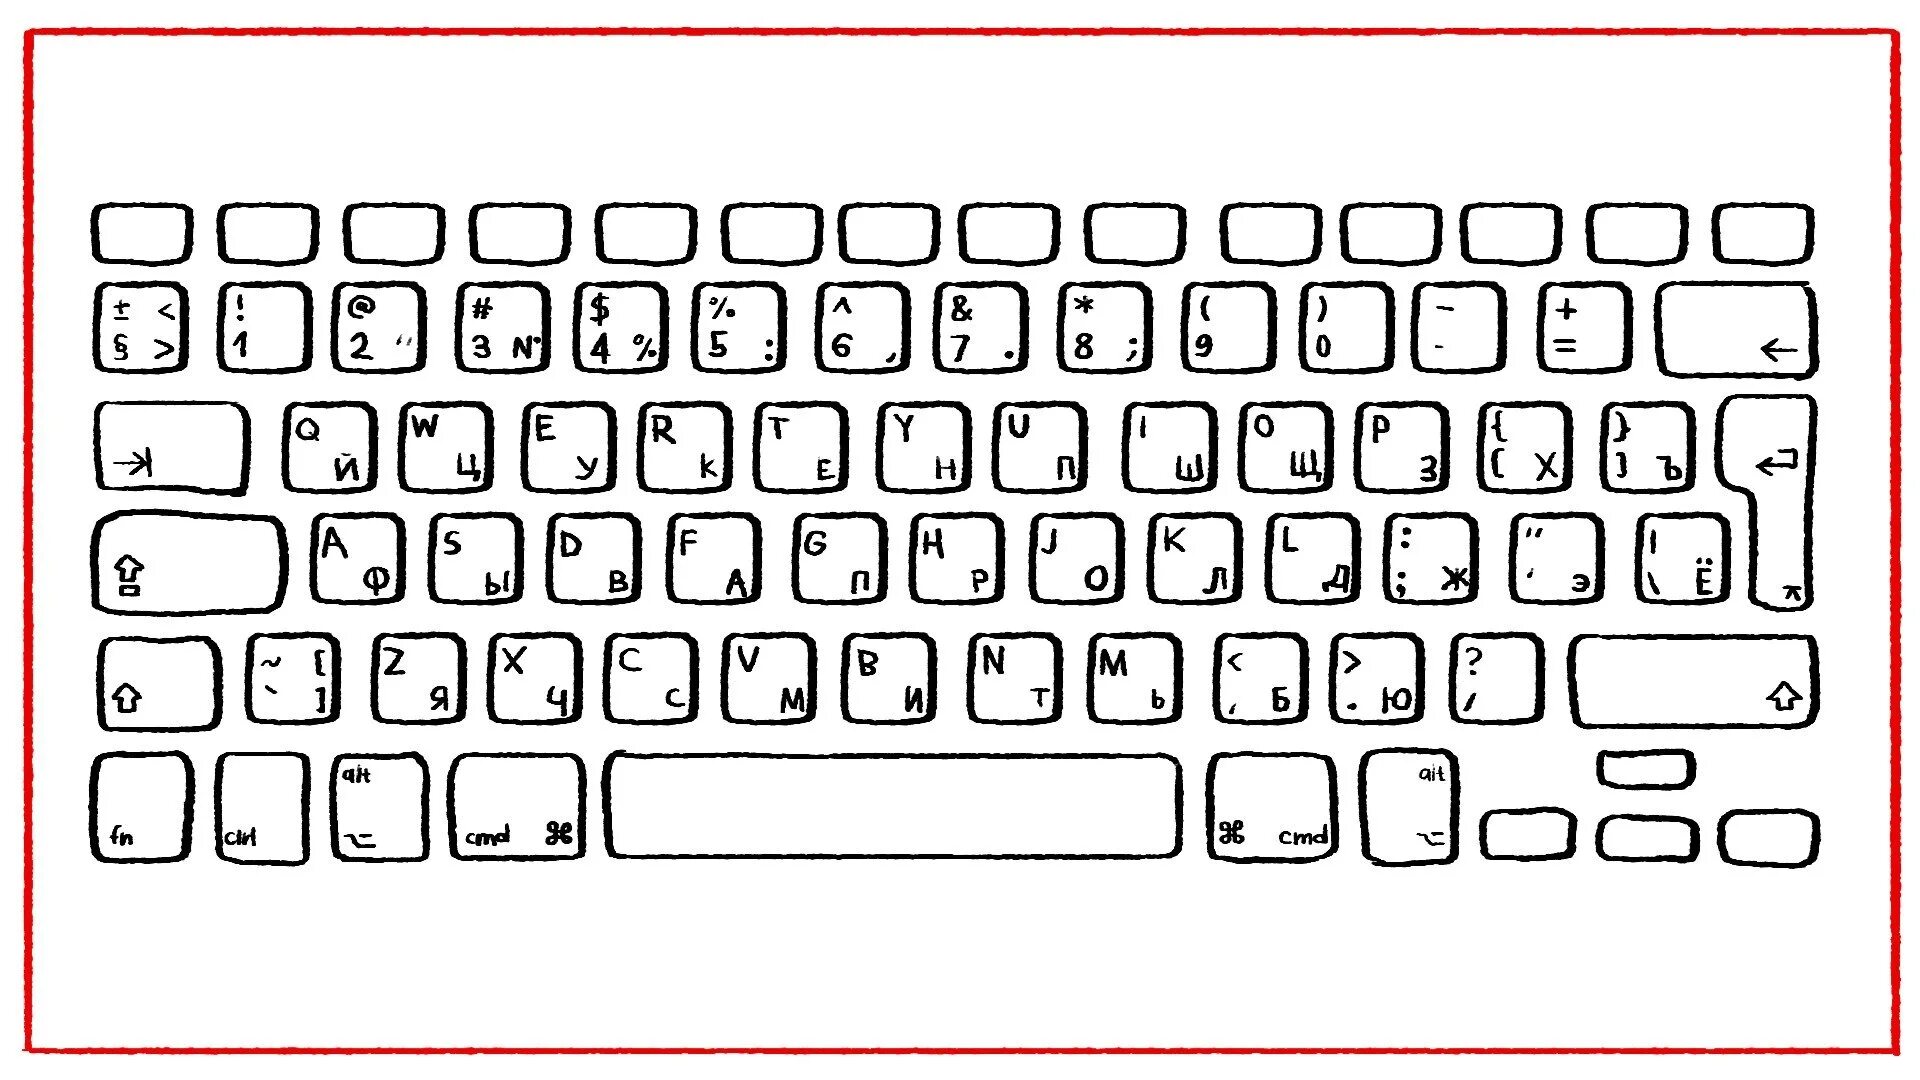 Печатать кроме. Компьютерная клавиатура раскладка русская и английская. Клавиатура раскраска. Распечатка клавиатуры компьютера. Клавиатура компьютера трафарет.